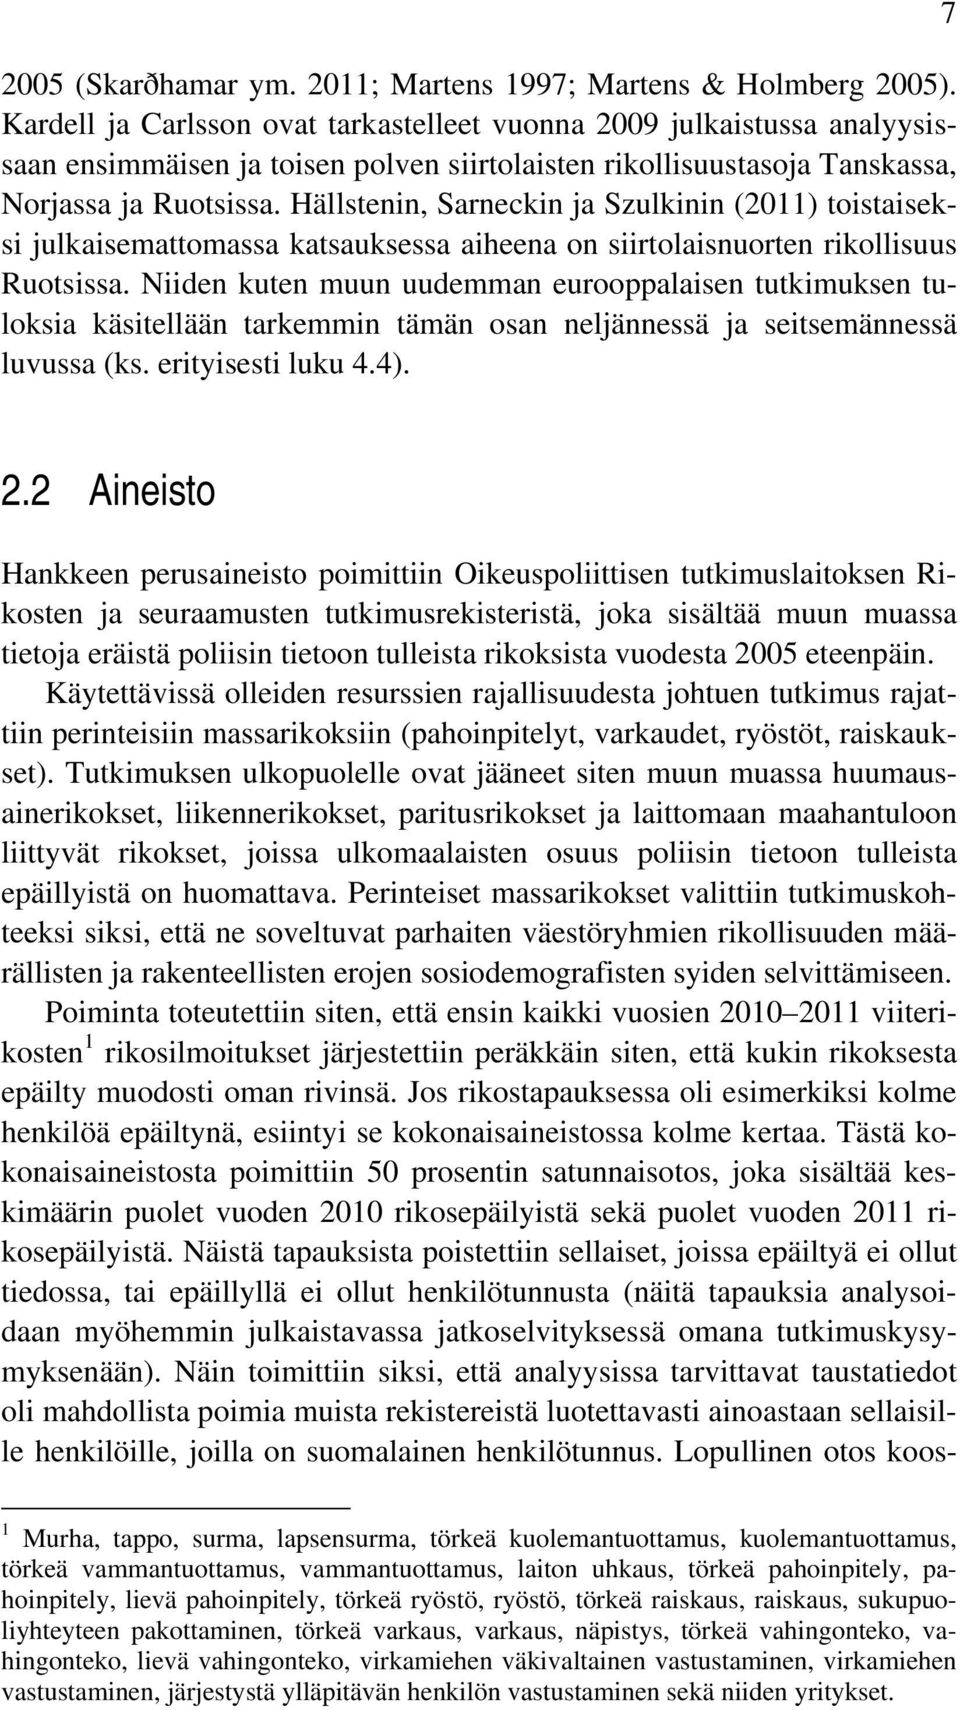 Hällstenin, Sarneckin ja Szulkinin (2011) toistaiseksi julkaisemattomassa katsauksessa aiheena on siirtolaisnuorten rikollisuus Ruotsissa.